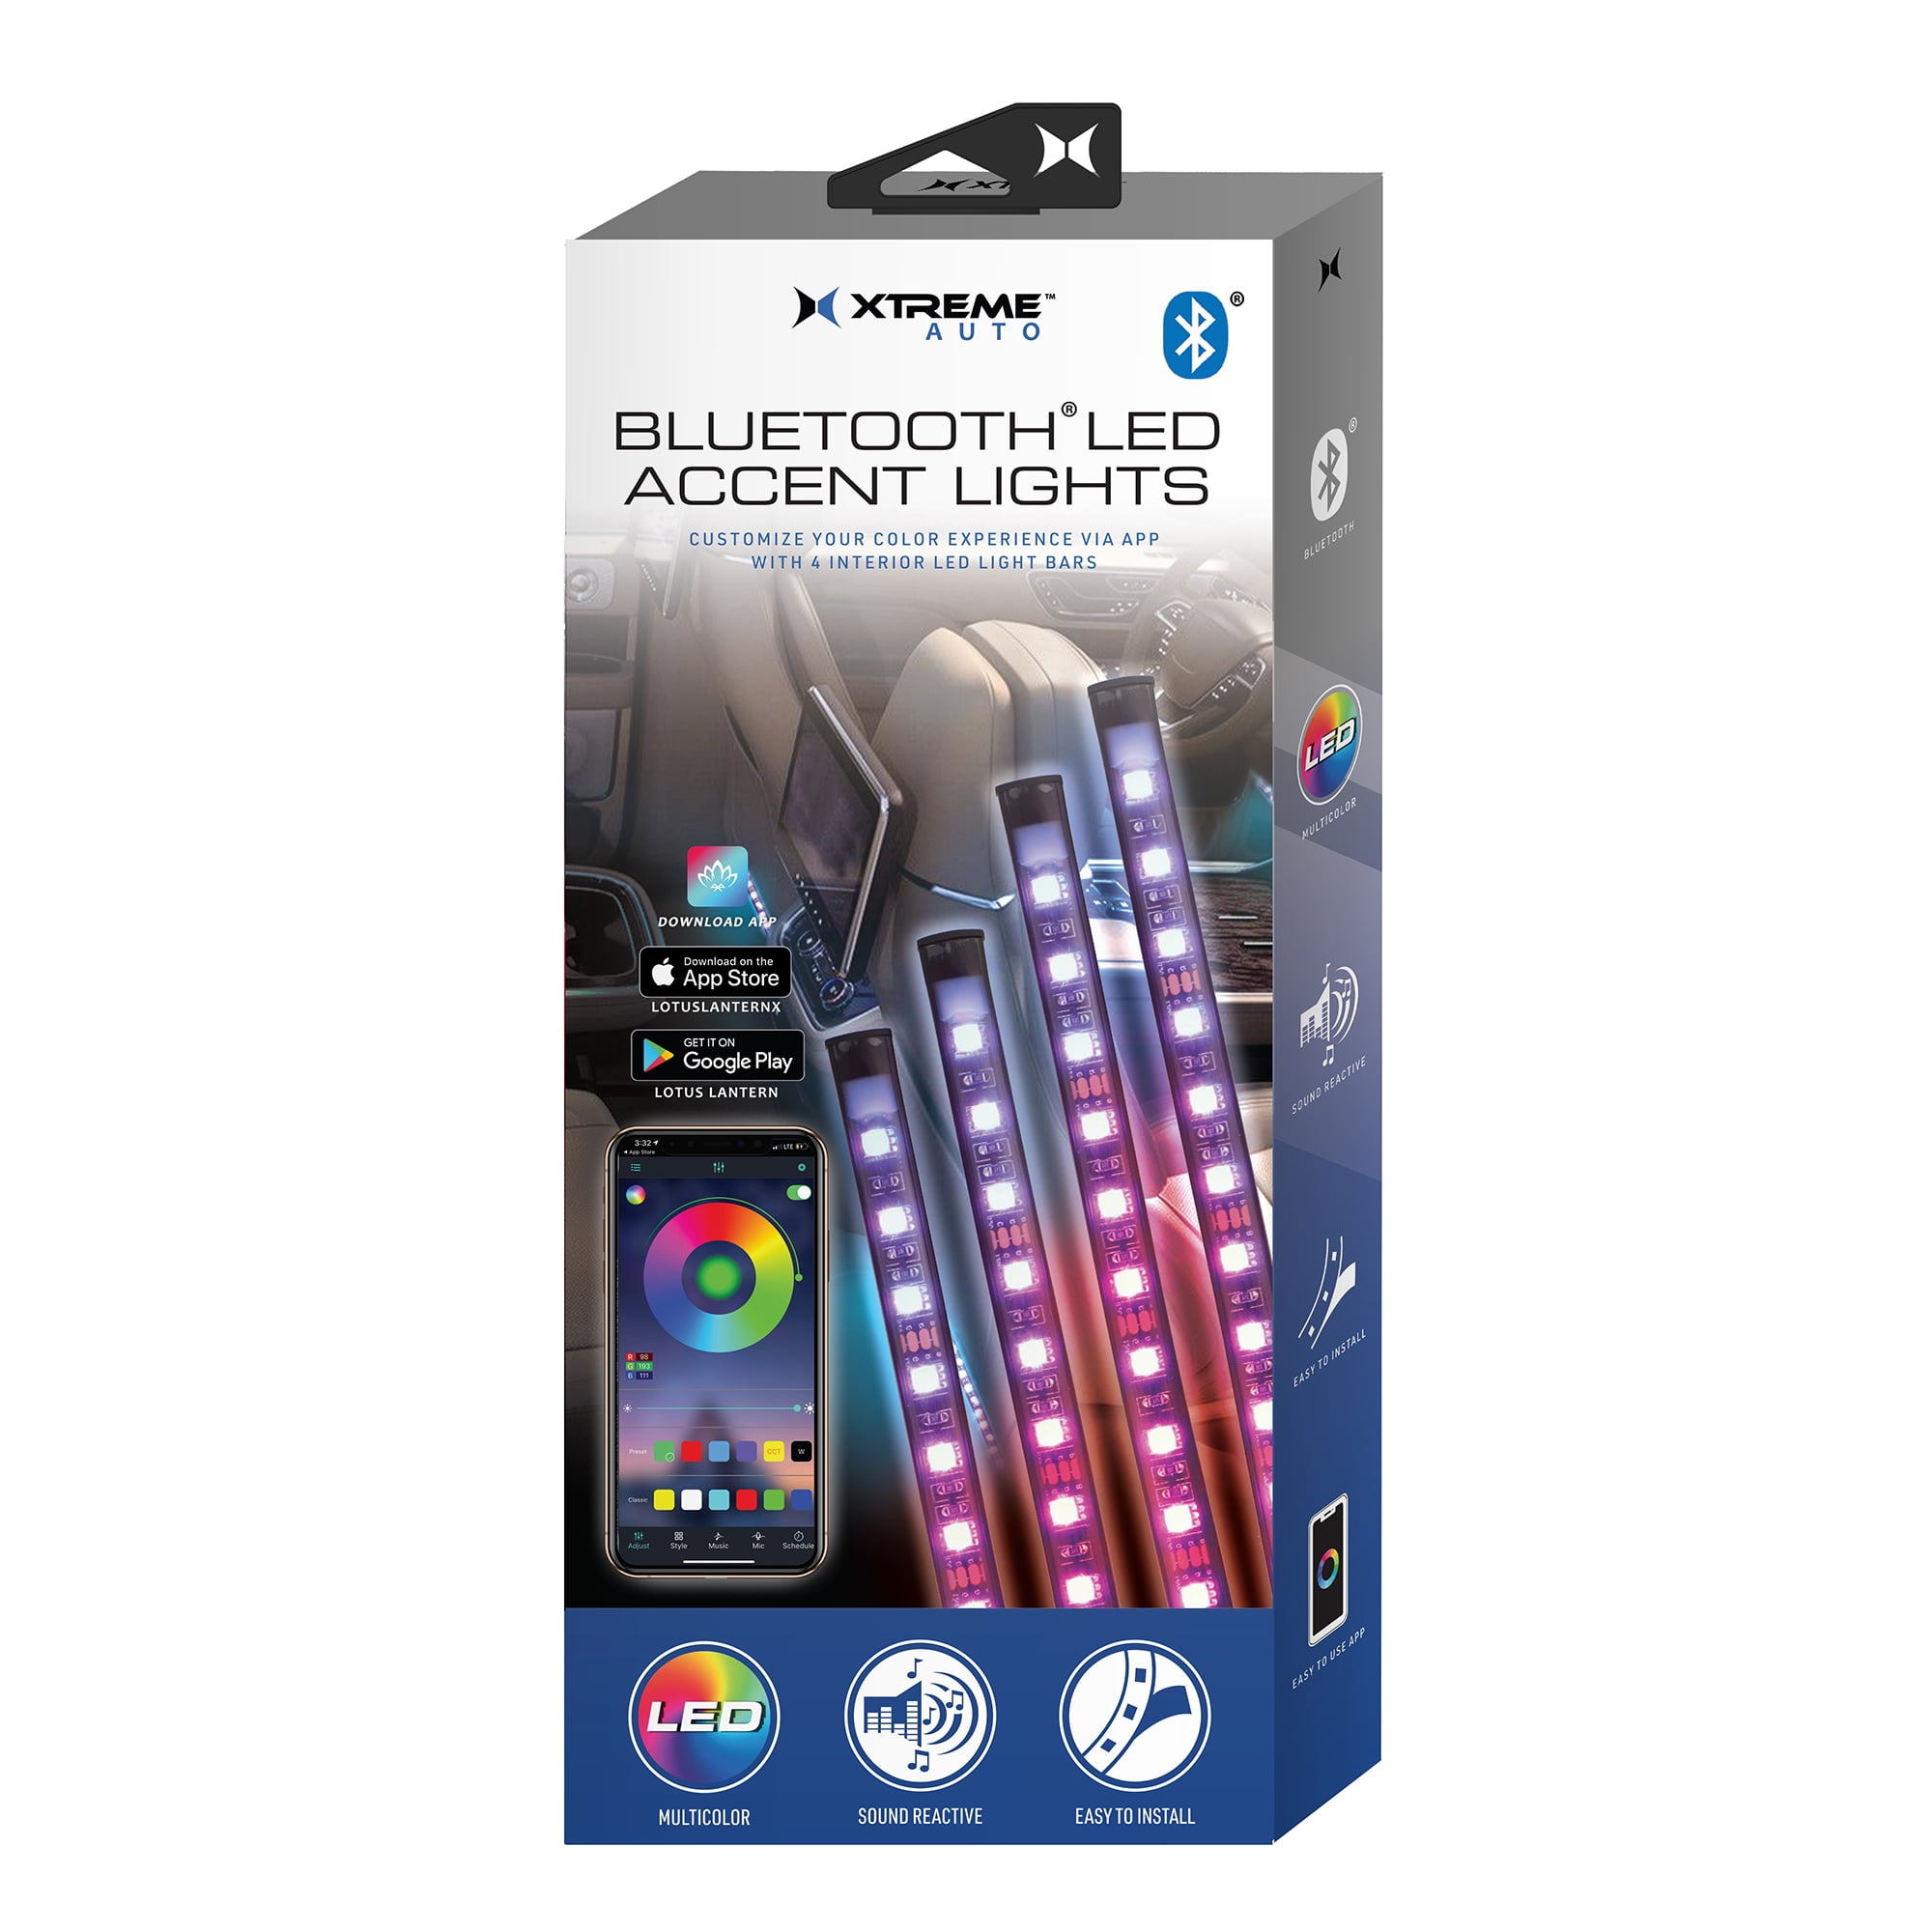 Xtreme LED Car Accent Light, 4 Light Strips, Reactive, Mobile App Control Walmart.com